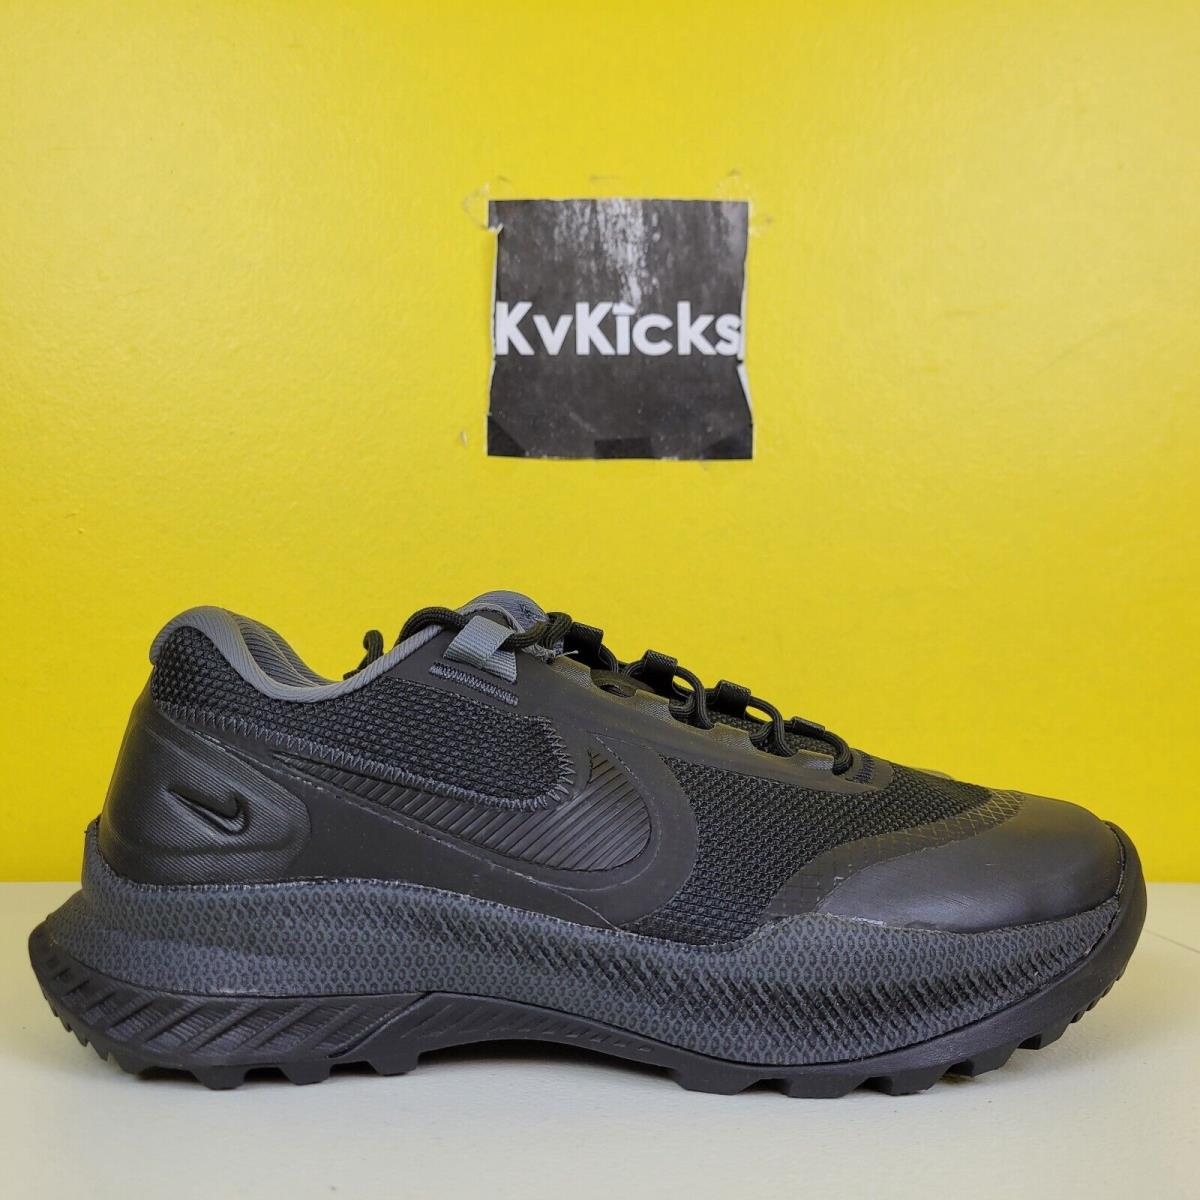 Nike React Sfb Carbon Low Athletic Black Military Boot Shoe CZ7339 Men`s Sz 9.5